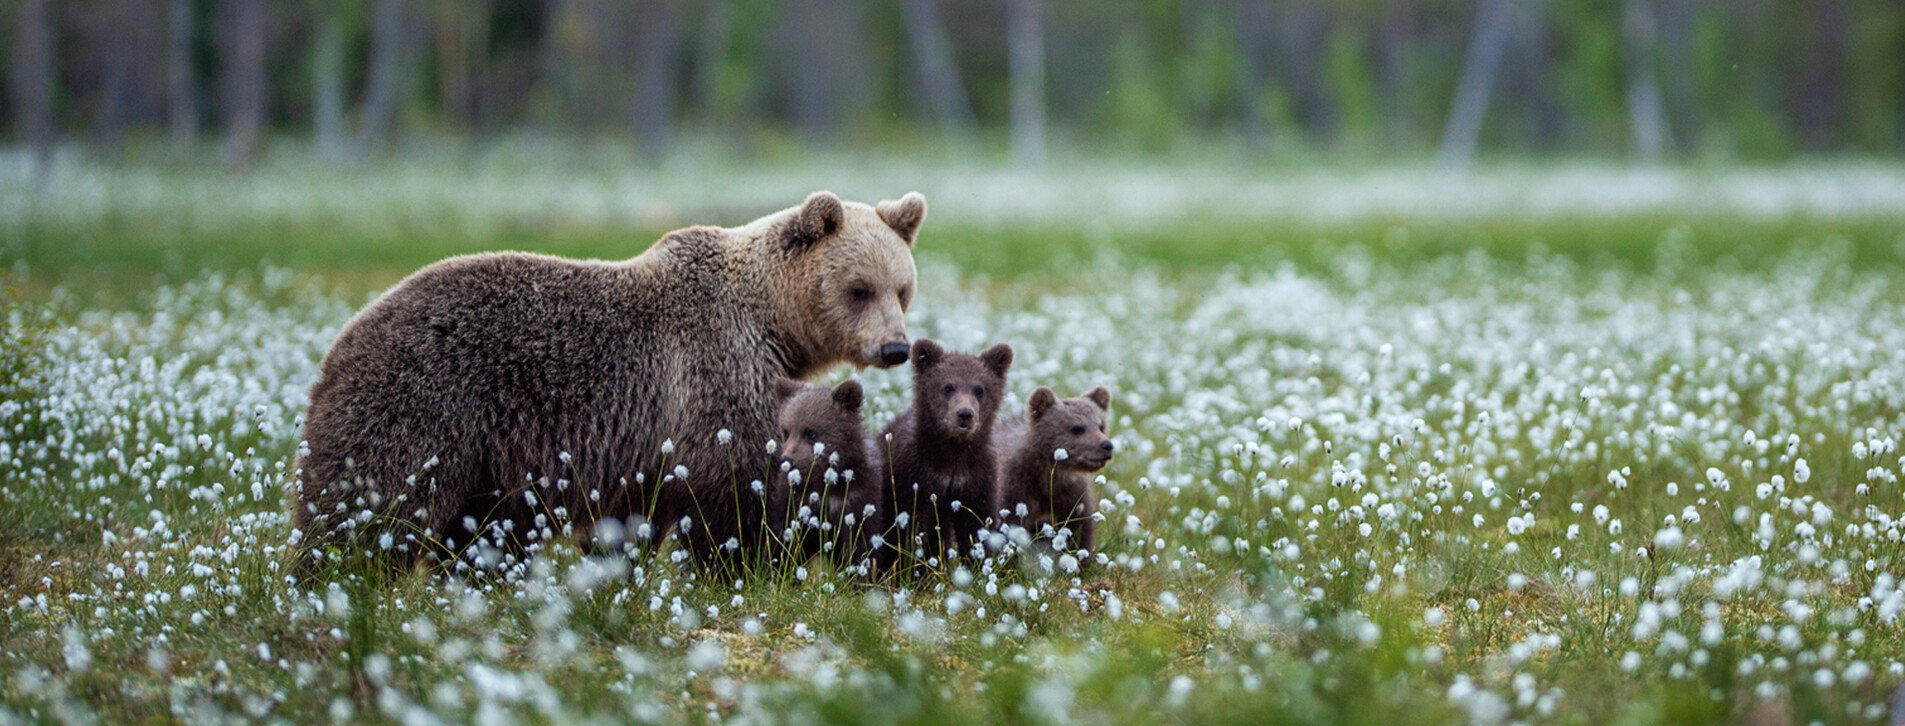 Фото 1 - Индивидуальная семейная экскурсия в медвежий приют